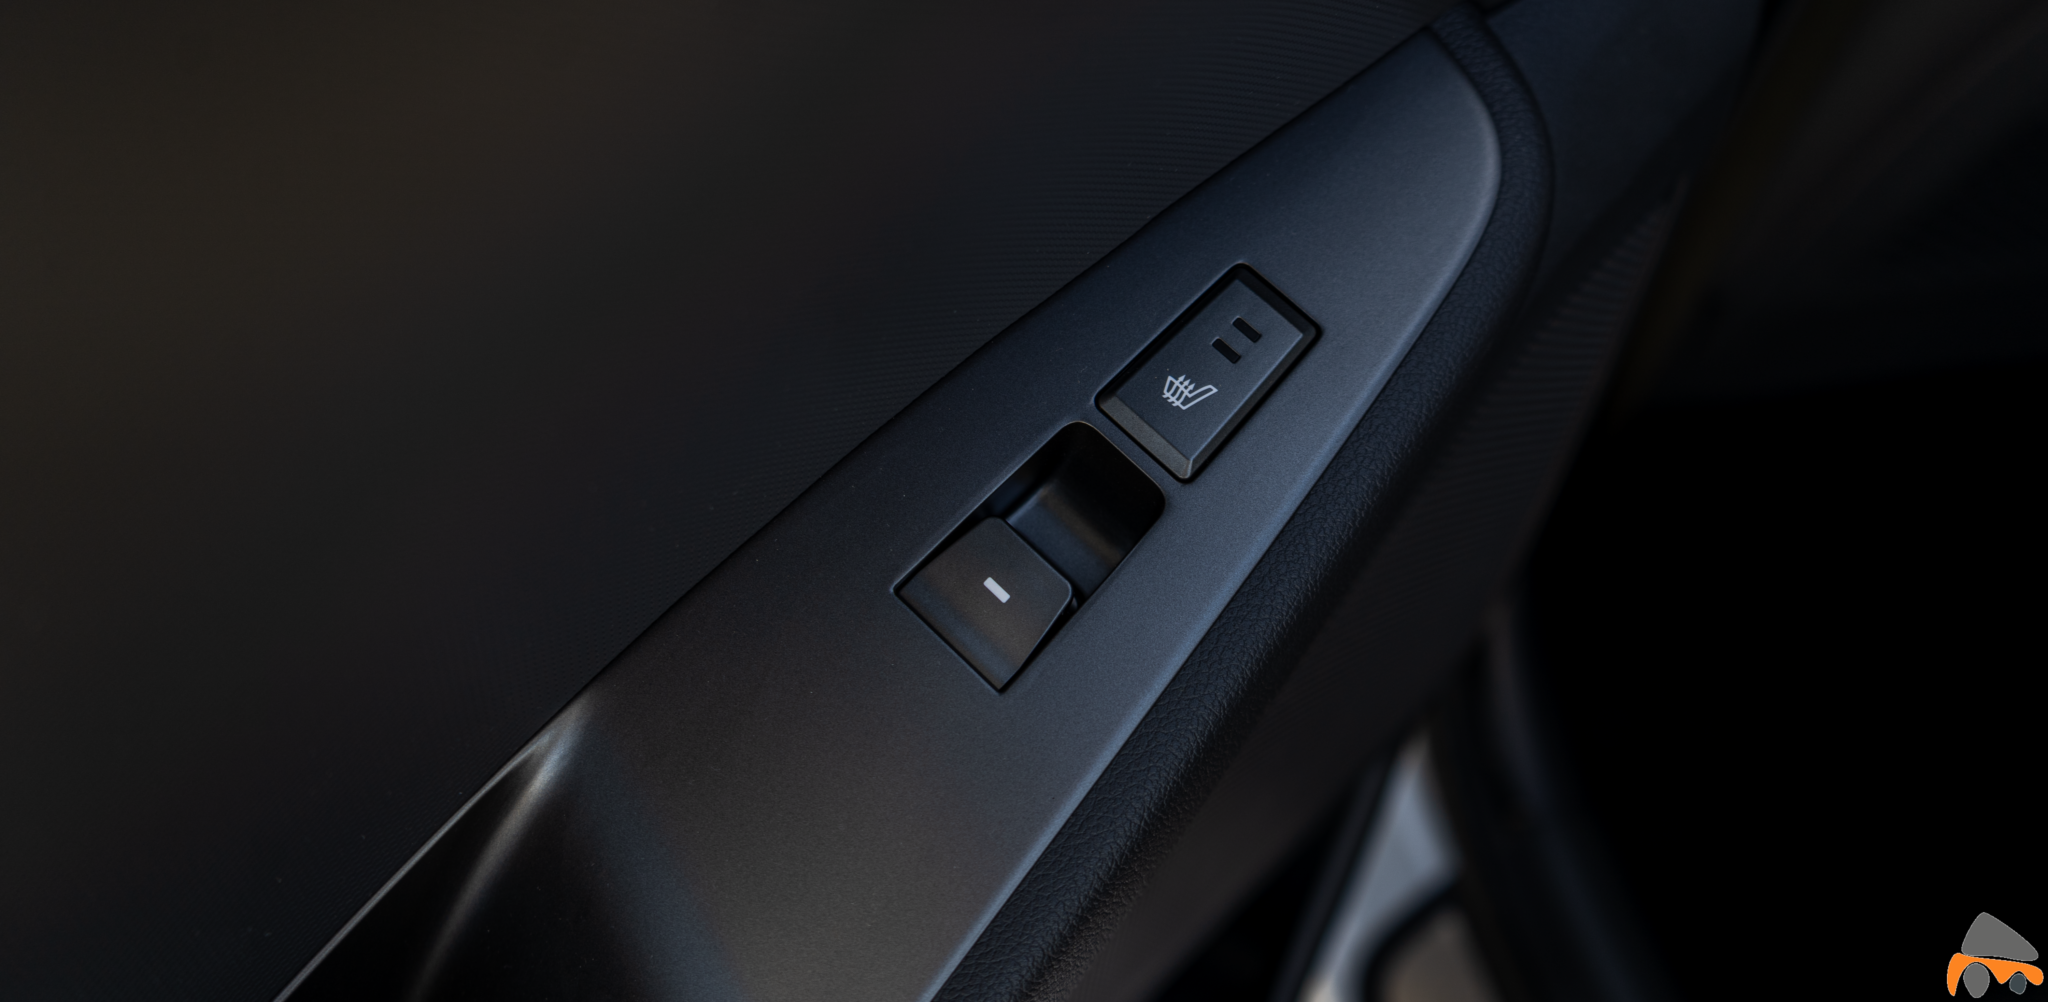 Botones puertas traseras Hyundai Ioniq Electrico - Prueba Hyundai Ioniq EV 2020: Un referente para la movilidad eléctrica